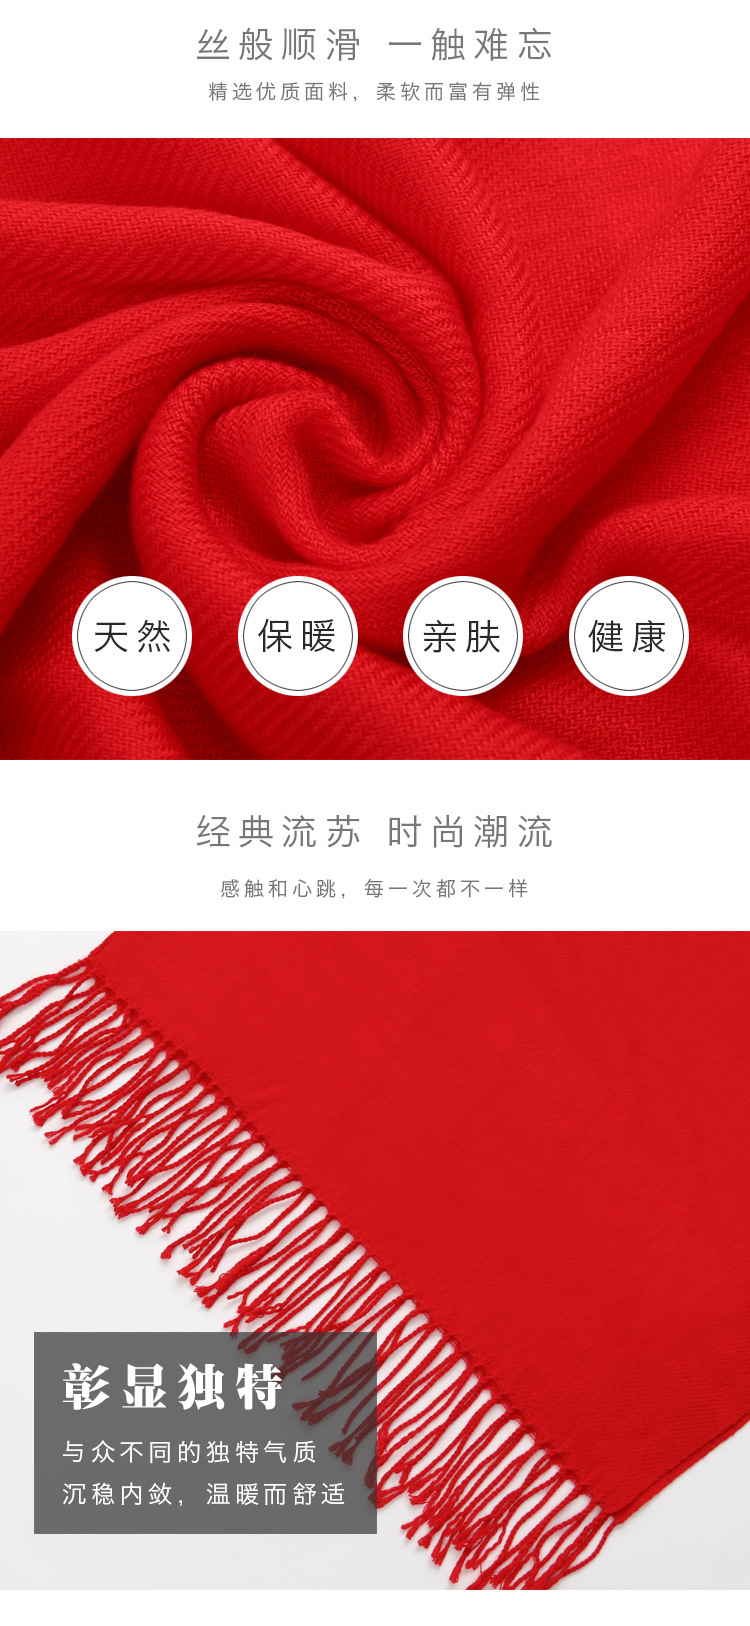 厂家直销双面绒羊绒围巾开业活动年会聚会中国红围巾定制刺绣logo示例图13